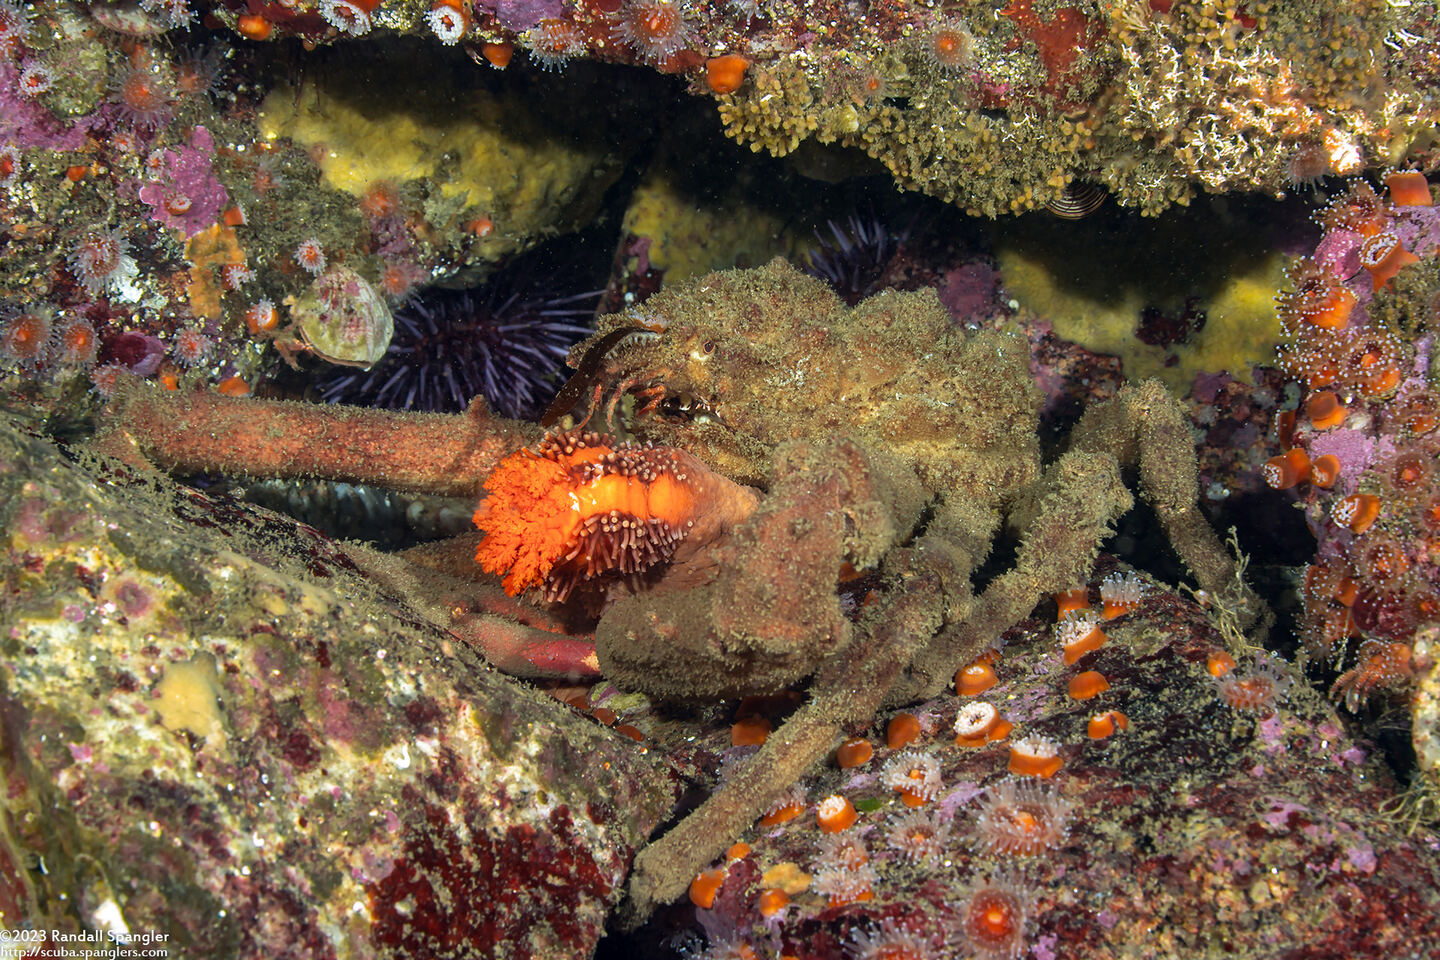 Loxorhynchus crispatus (Masking Crab); Eating orange sea cucumber